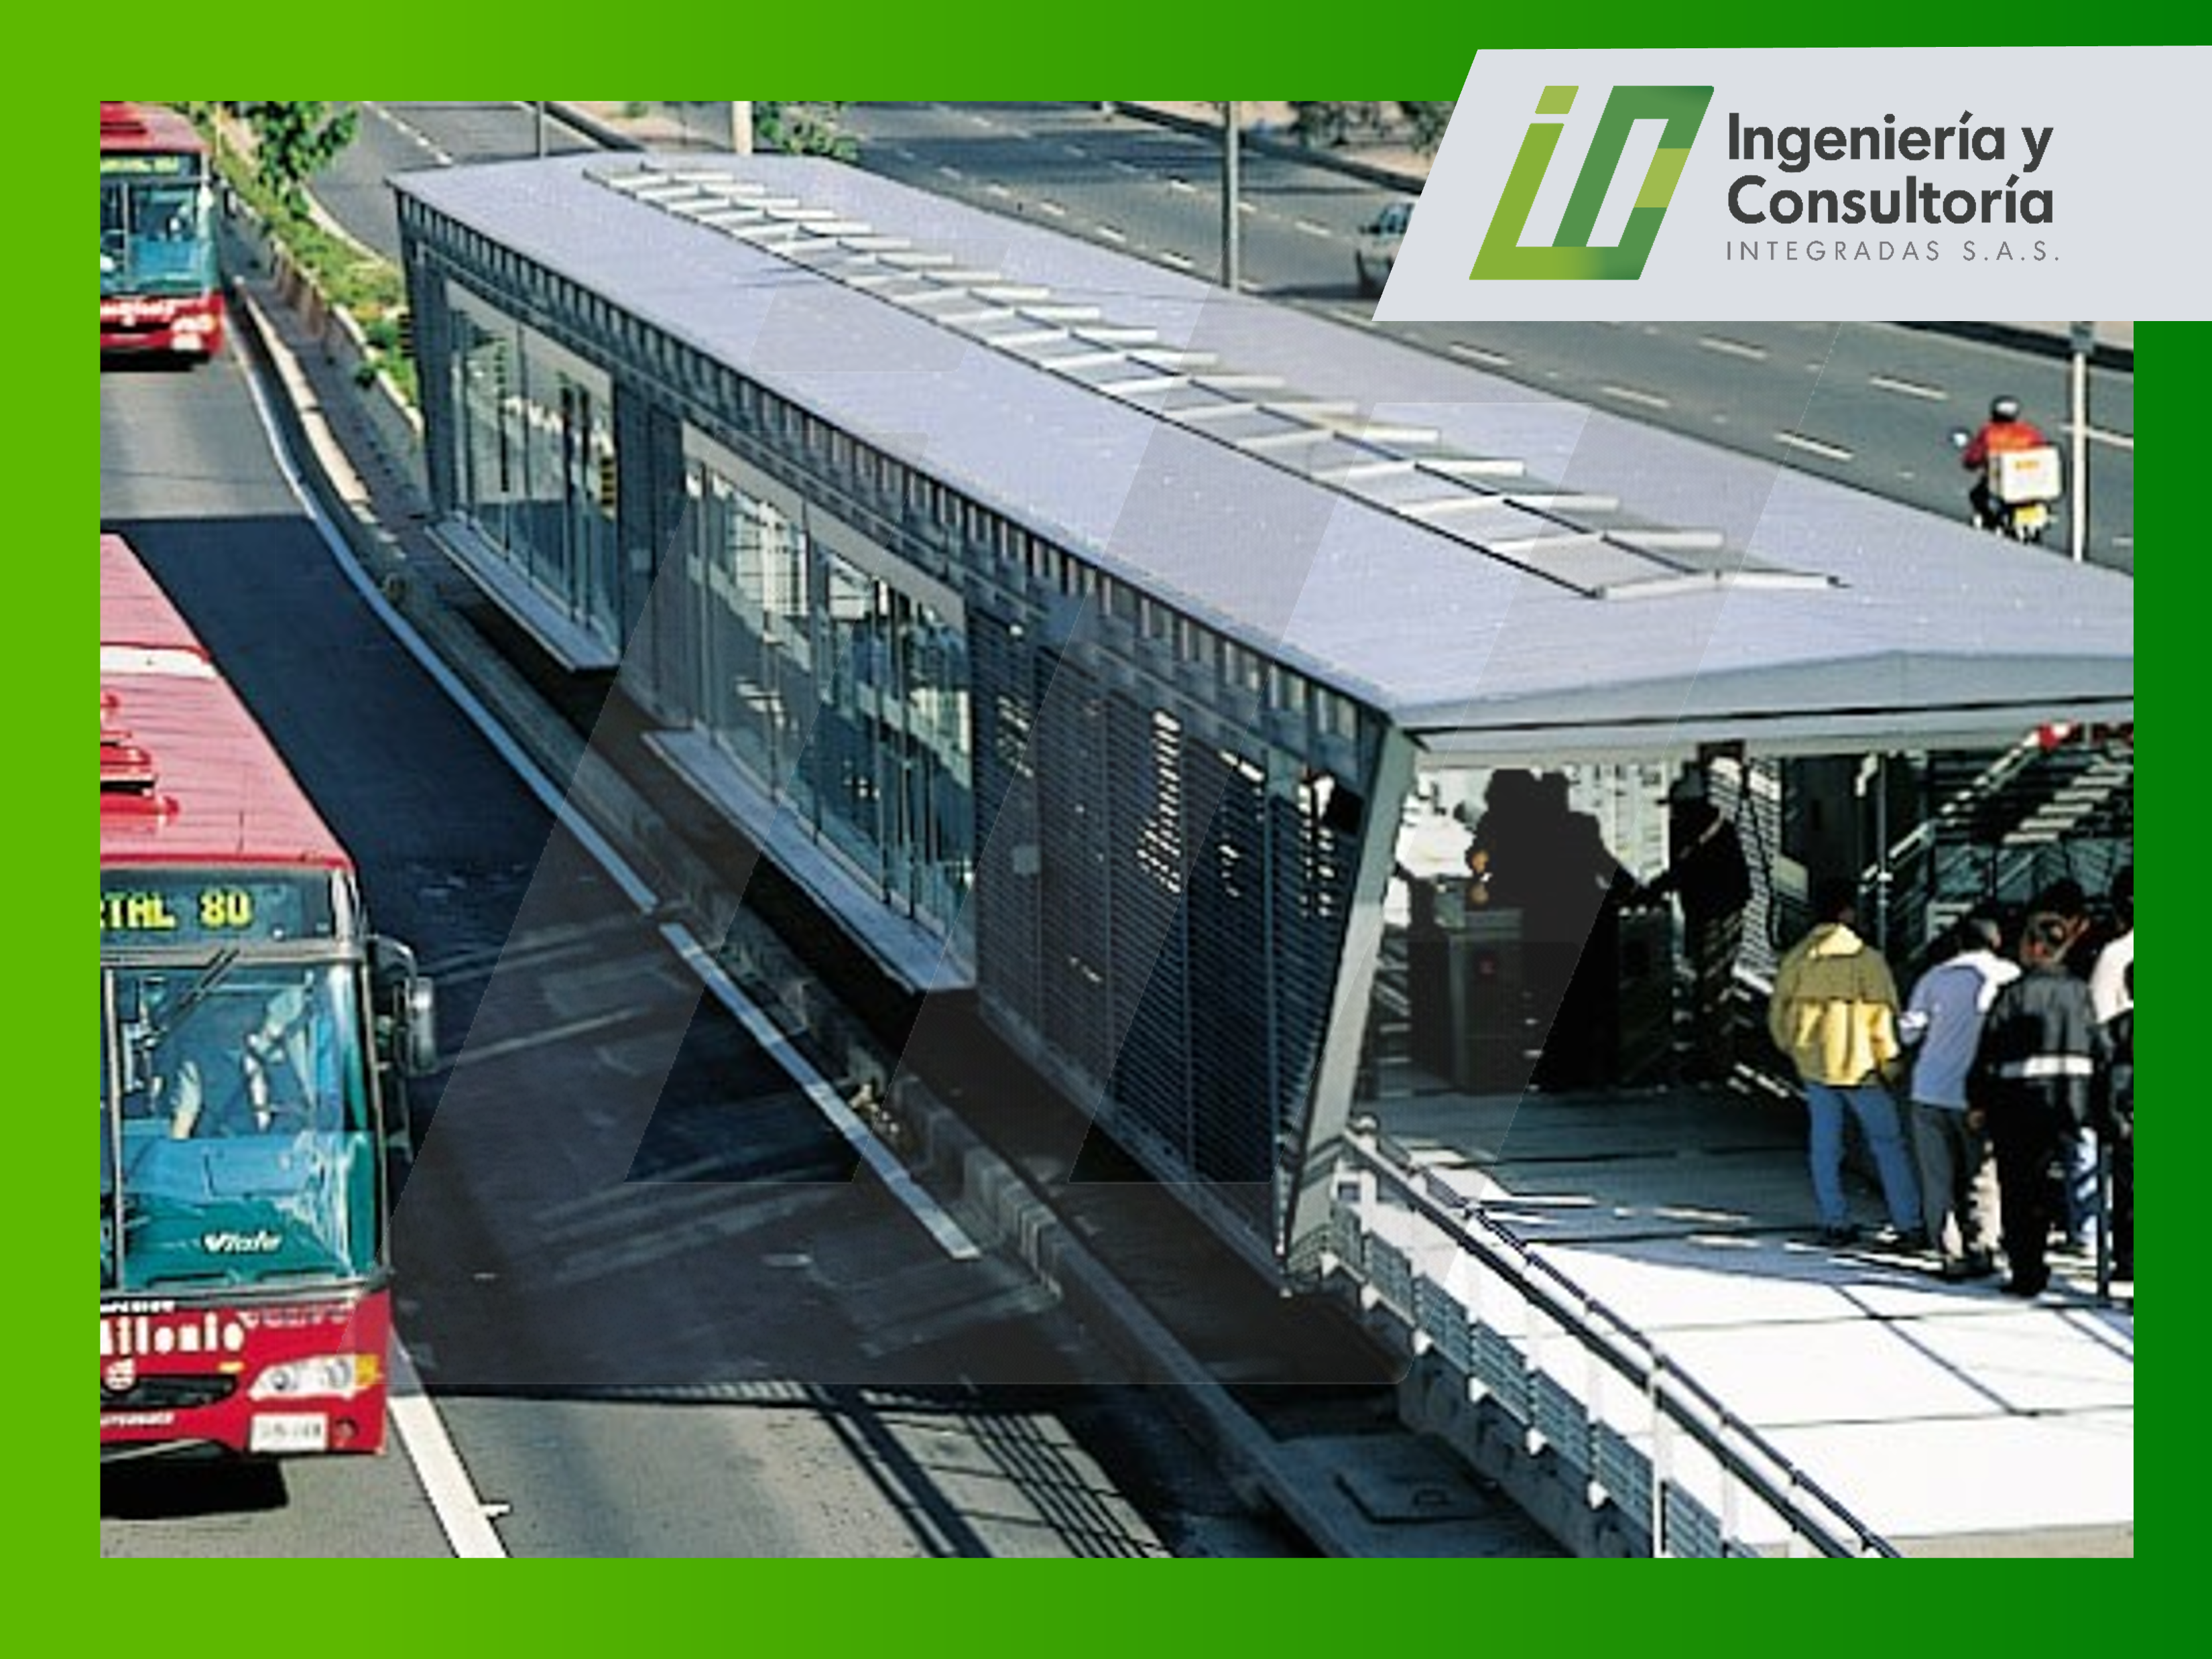 Diseño de estructuras de sistema de transporte masivo de Santa fe de Bogotá, estaciones de abordaje, puentes peatonales, terminal norte, terminal sur.